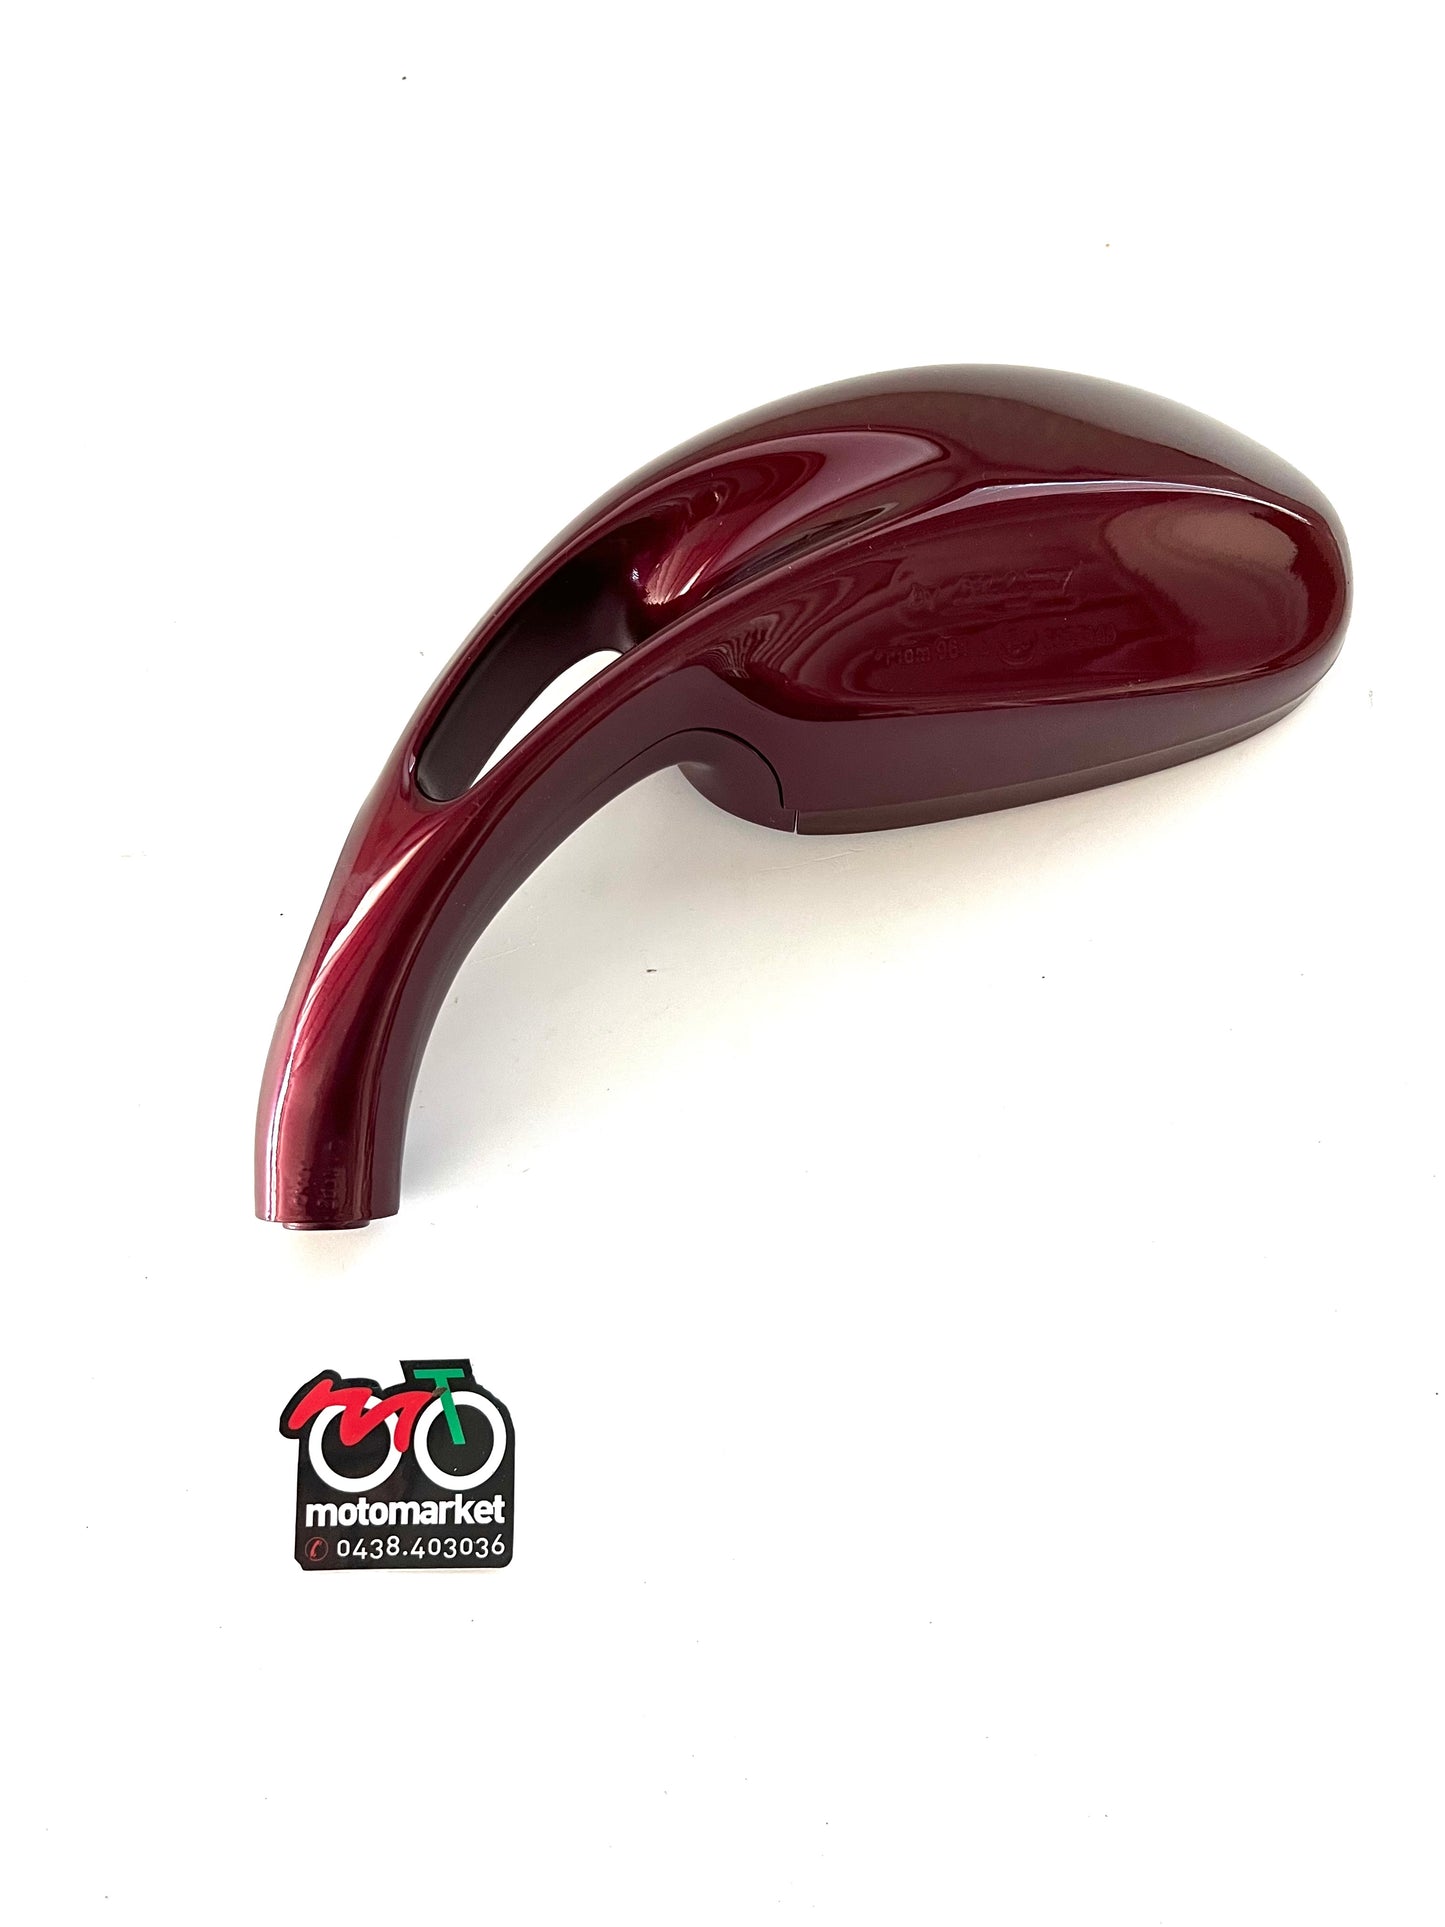 Specchio sinistro rosso magenta Malaguti F15 art.08801891